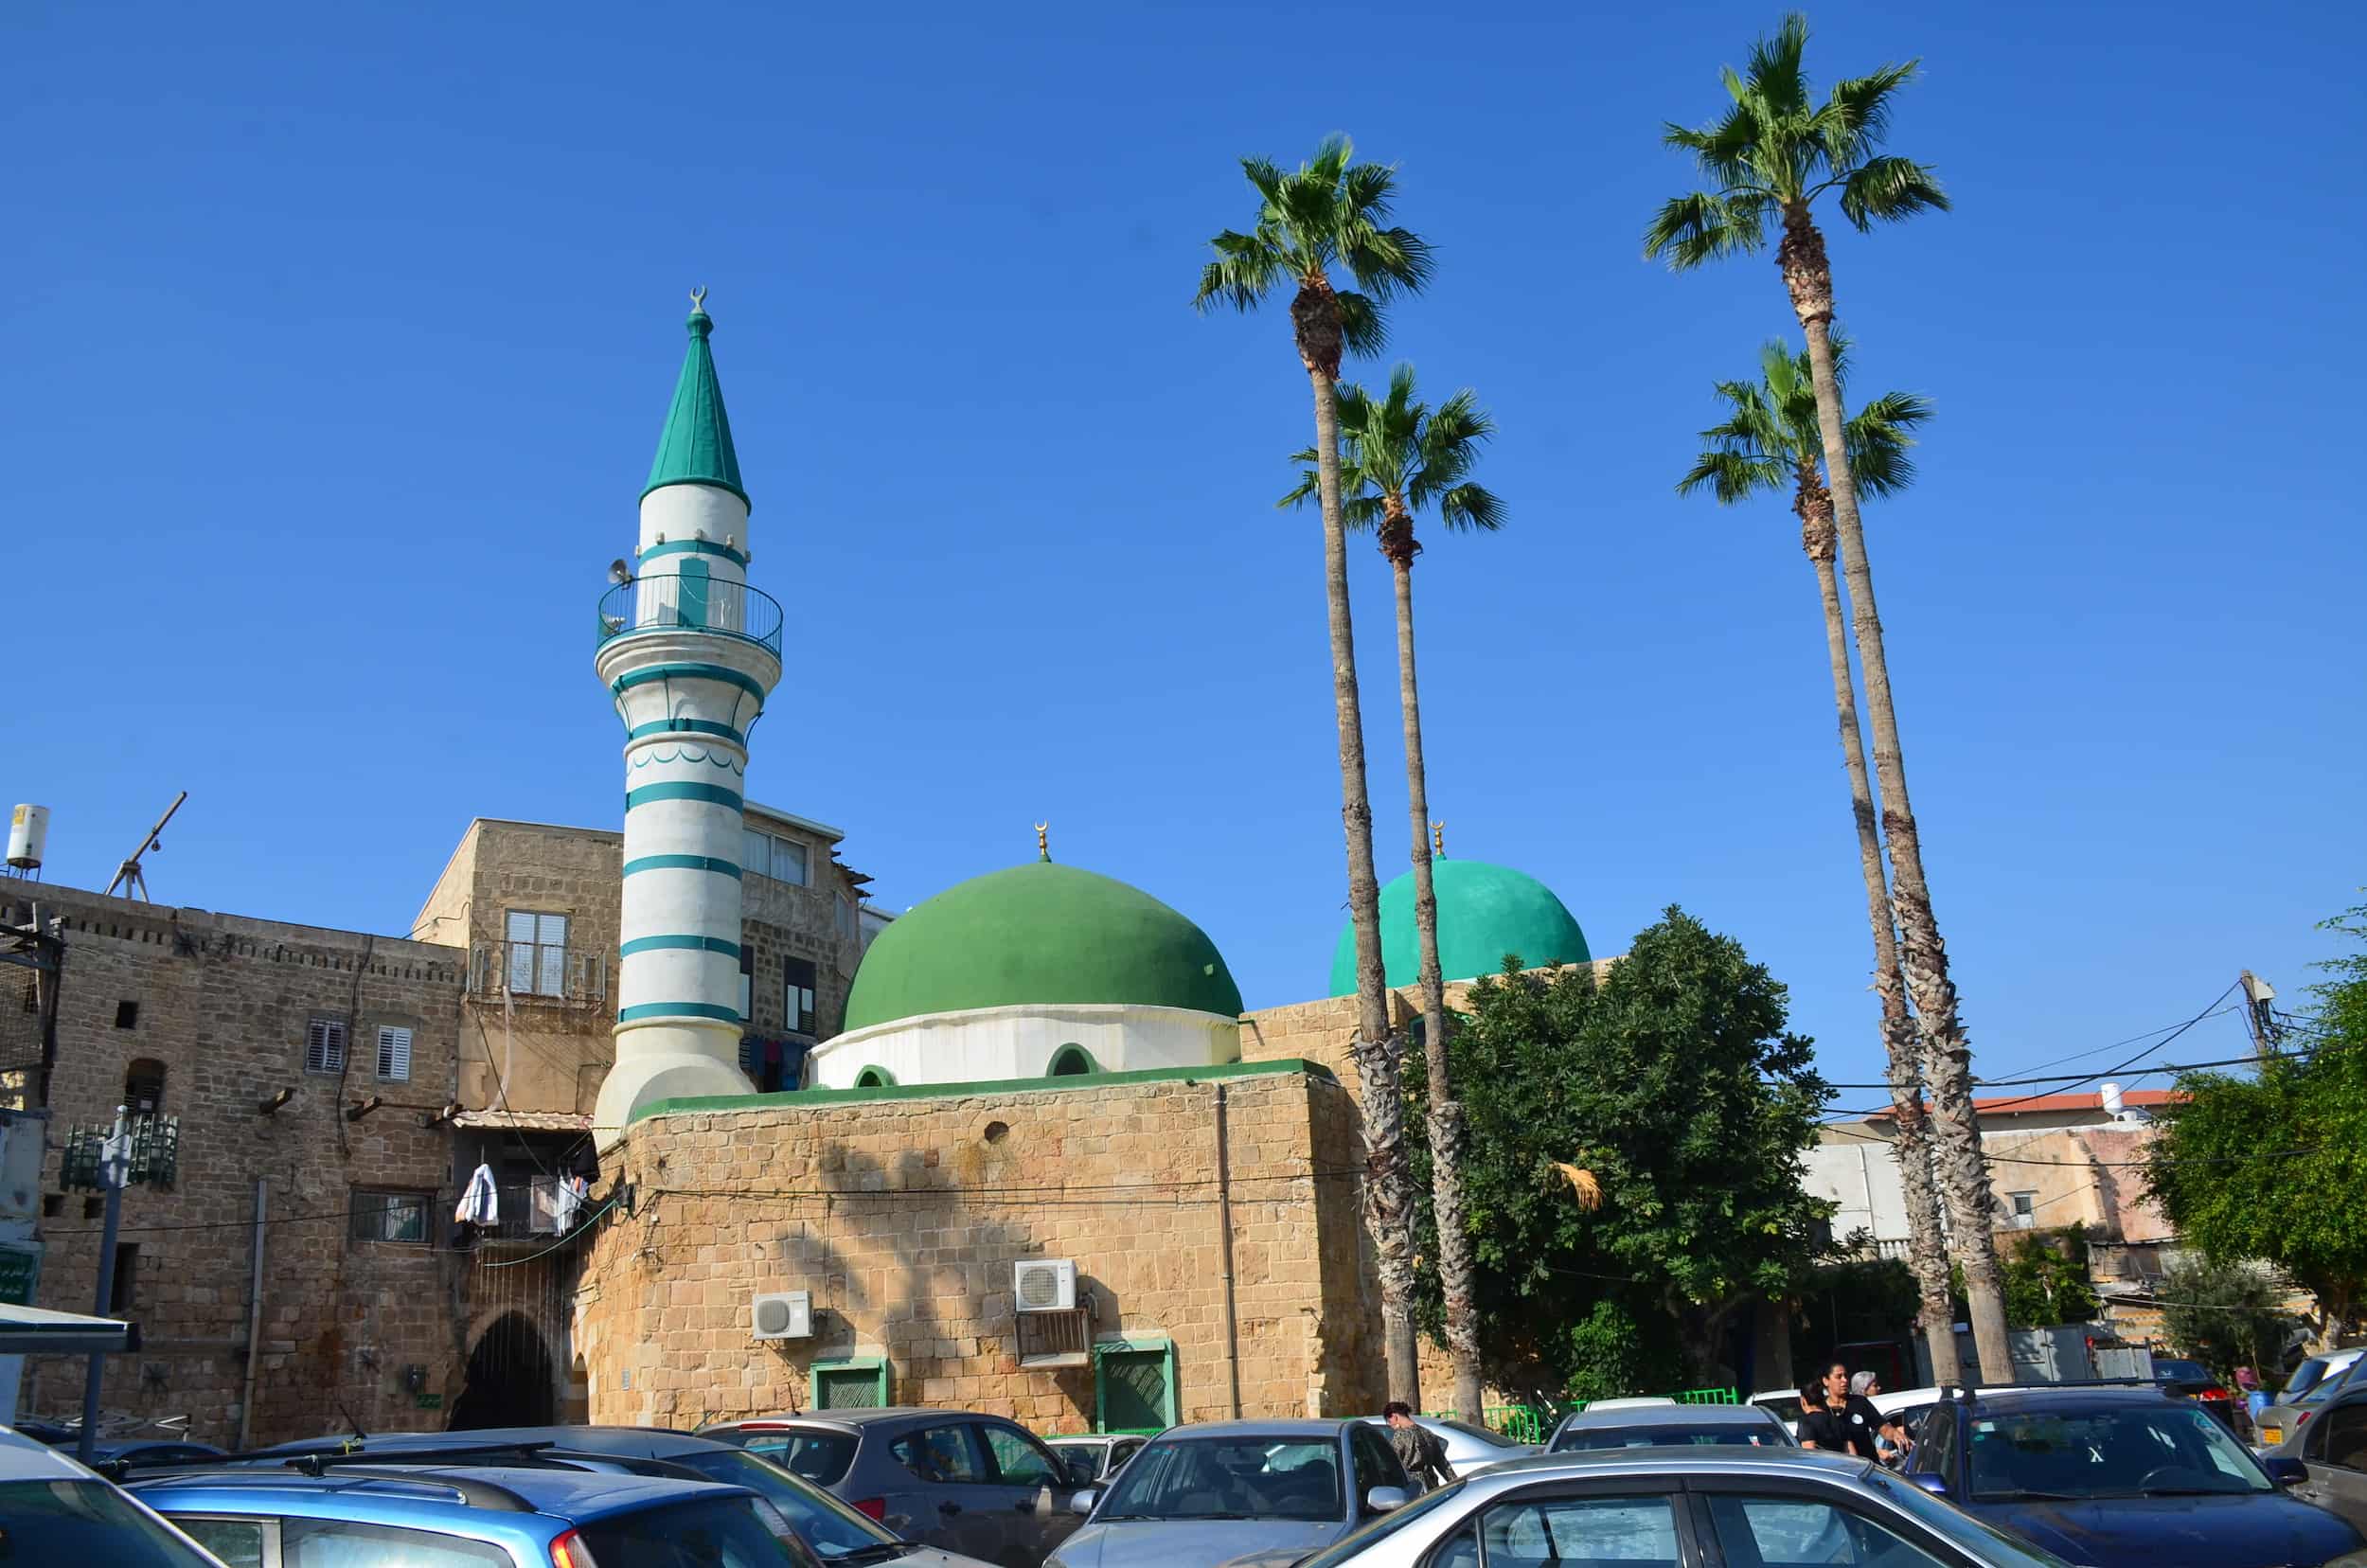 El-Zeituna Mosque in Acre, Israel